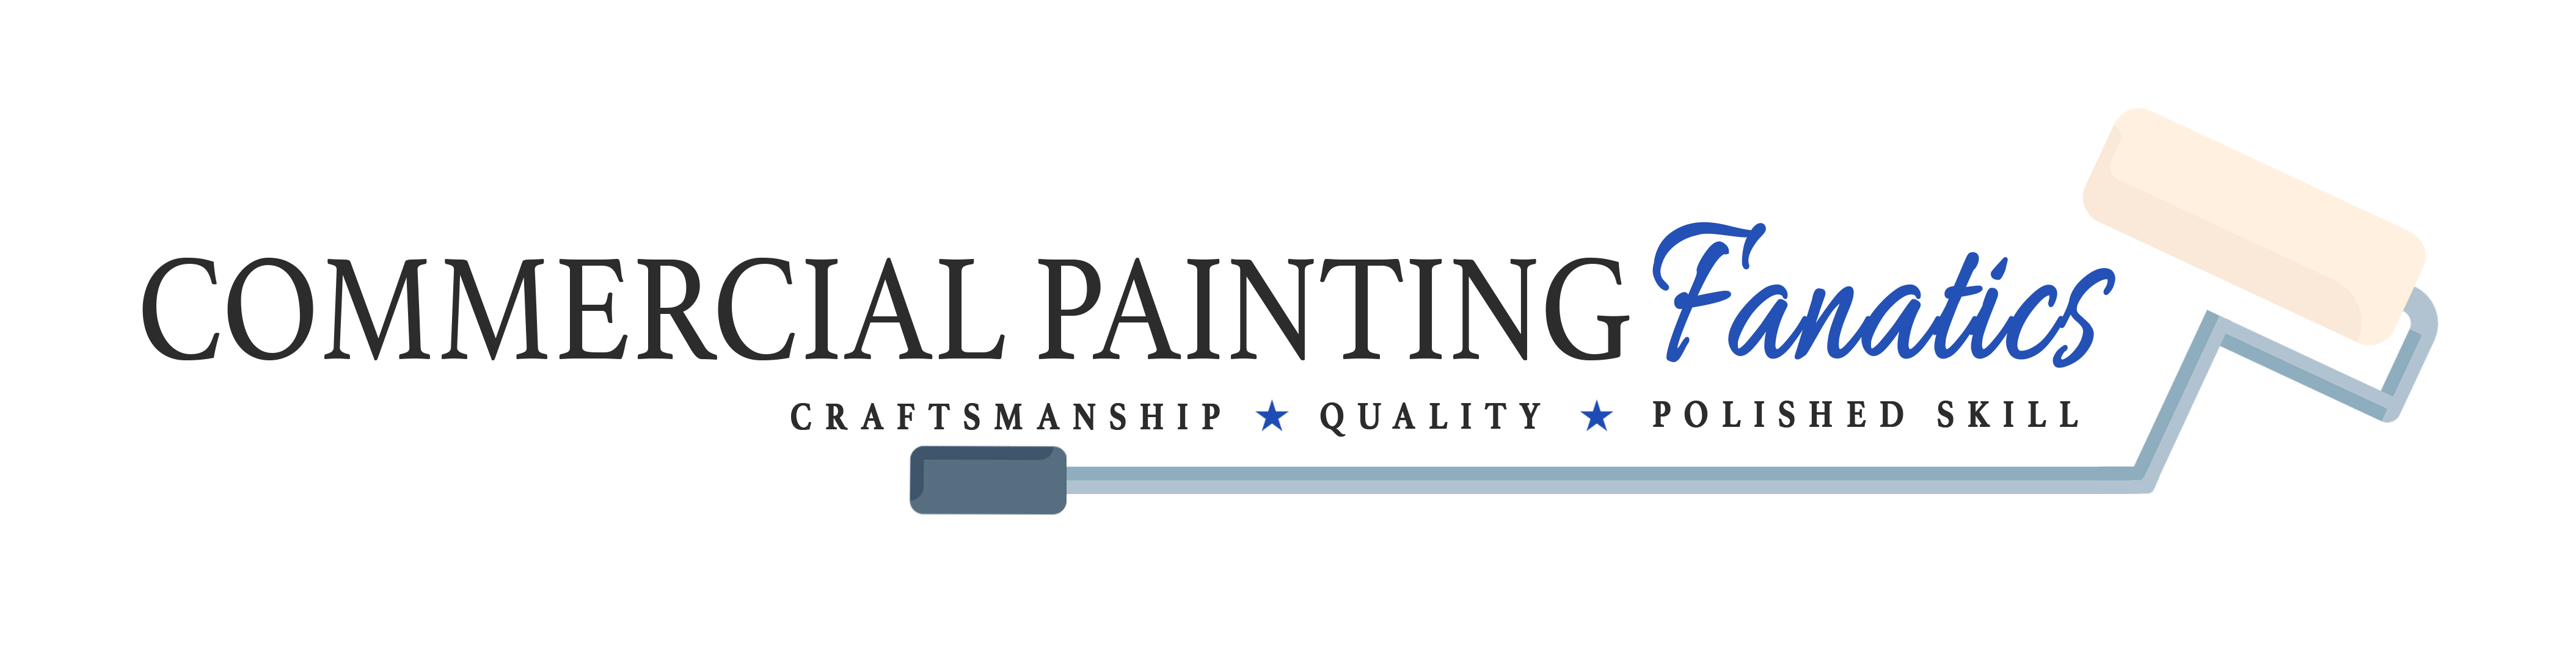 Commercial Painters Lexington Kentucky